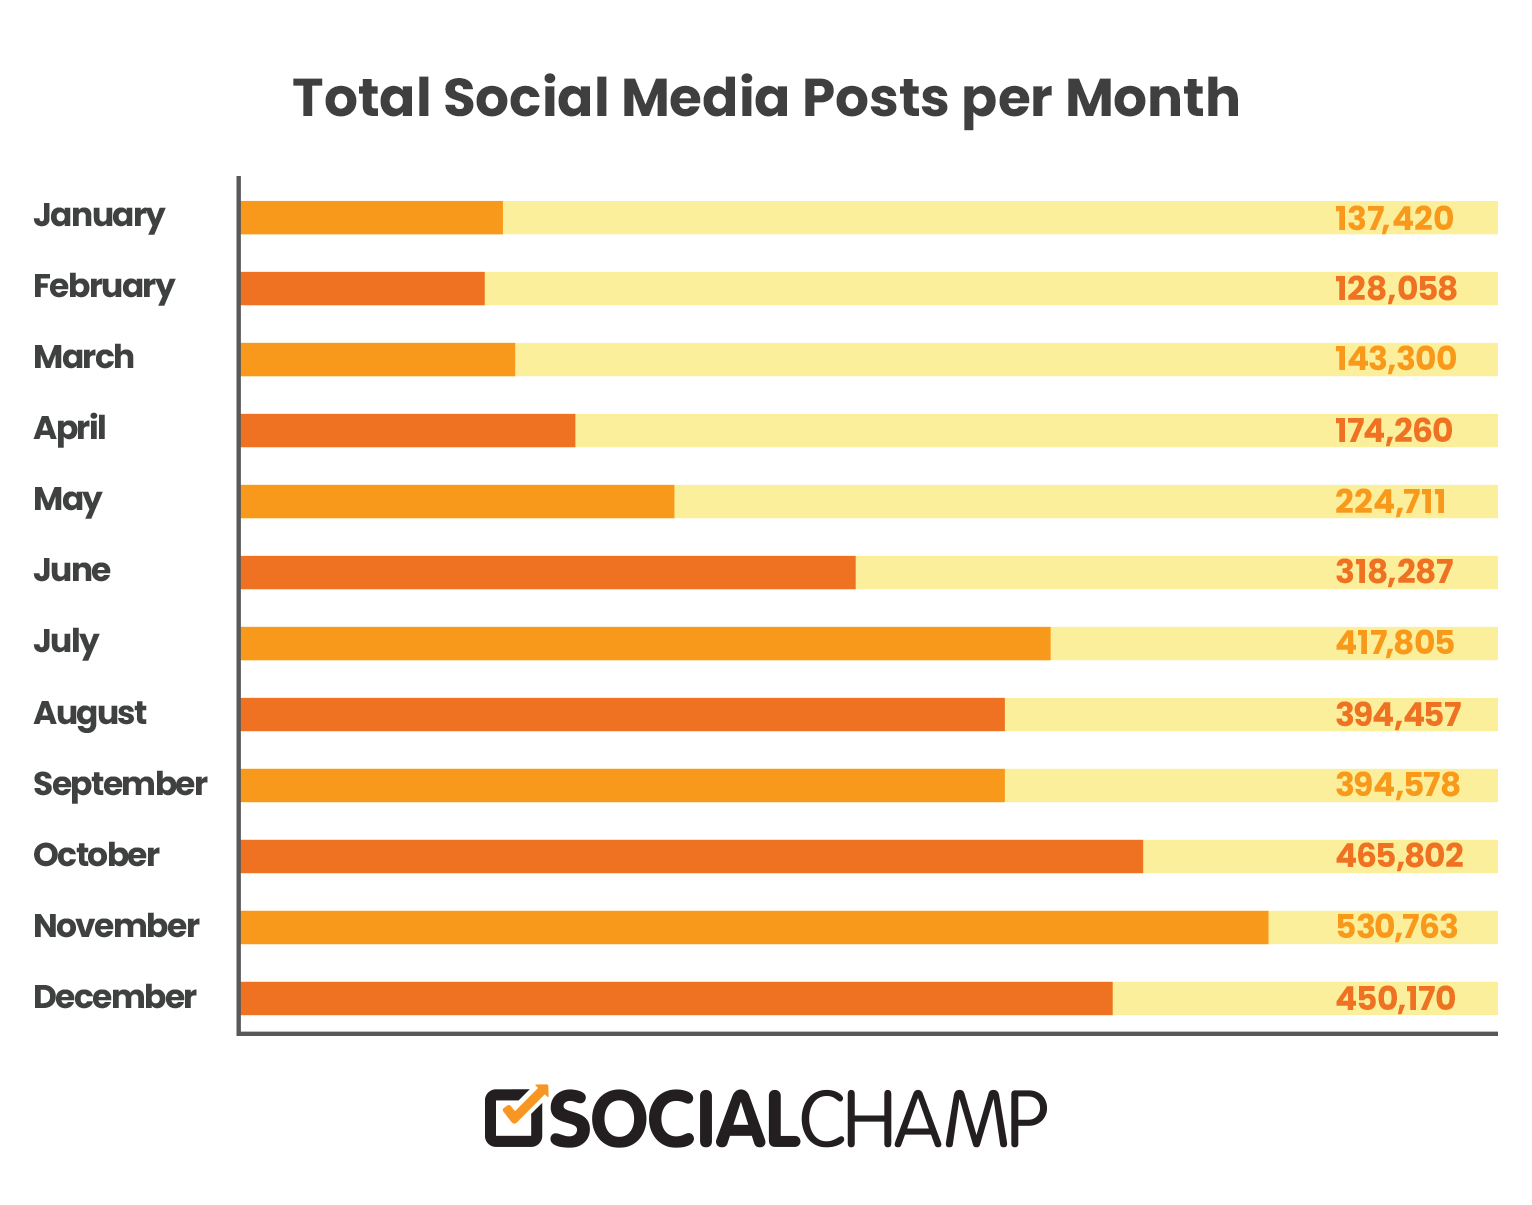 مجموع پست های رسانه های اجتماعی توسط Social Champ در ماه